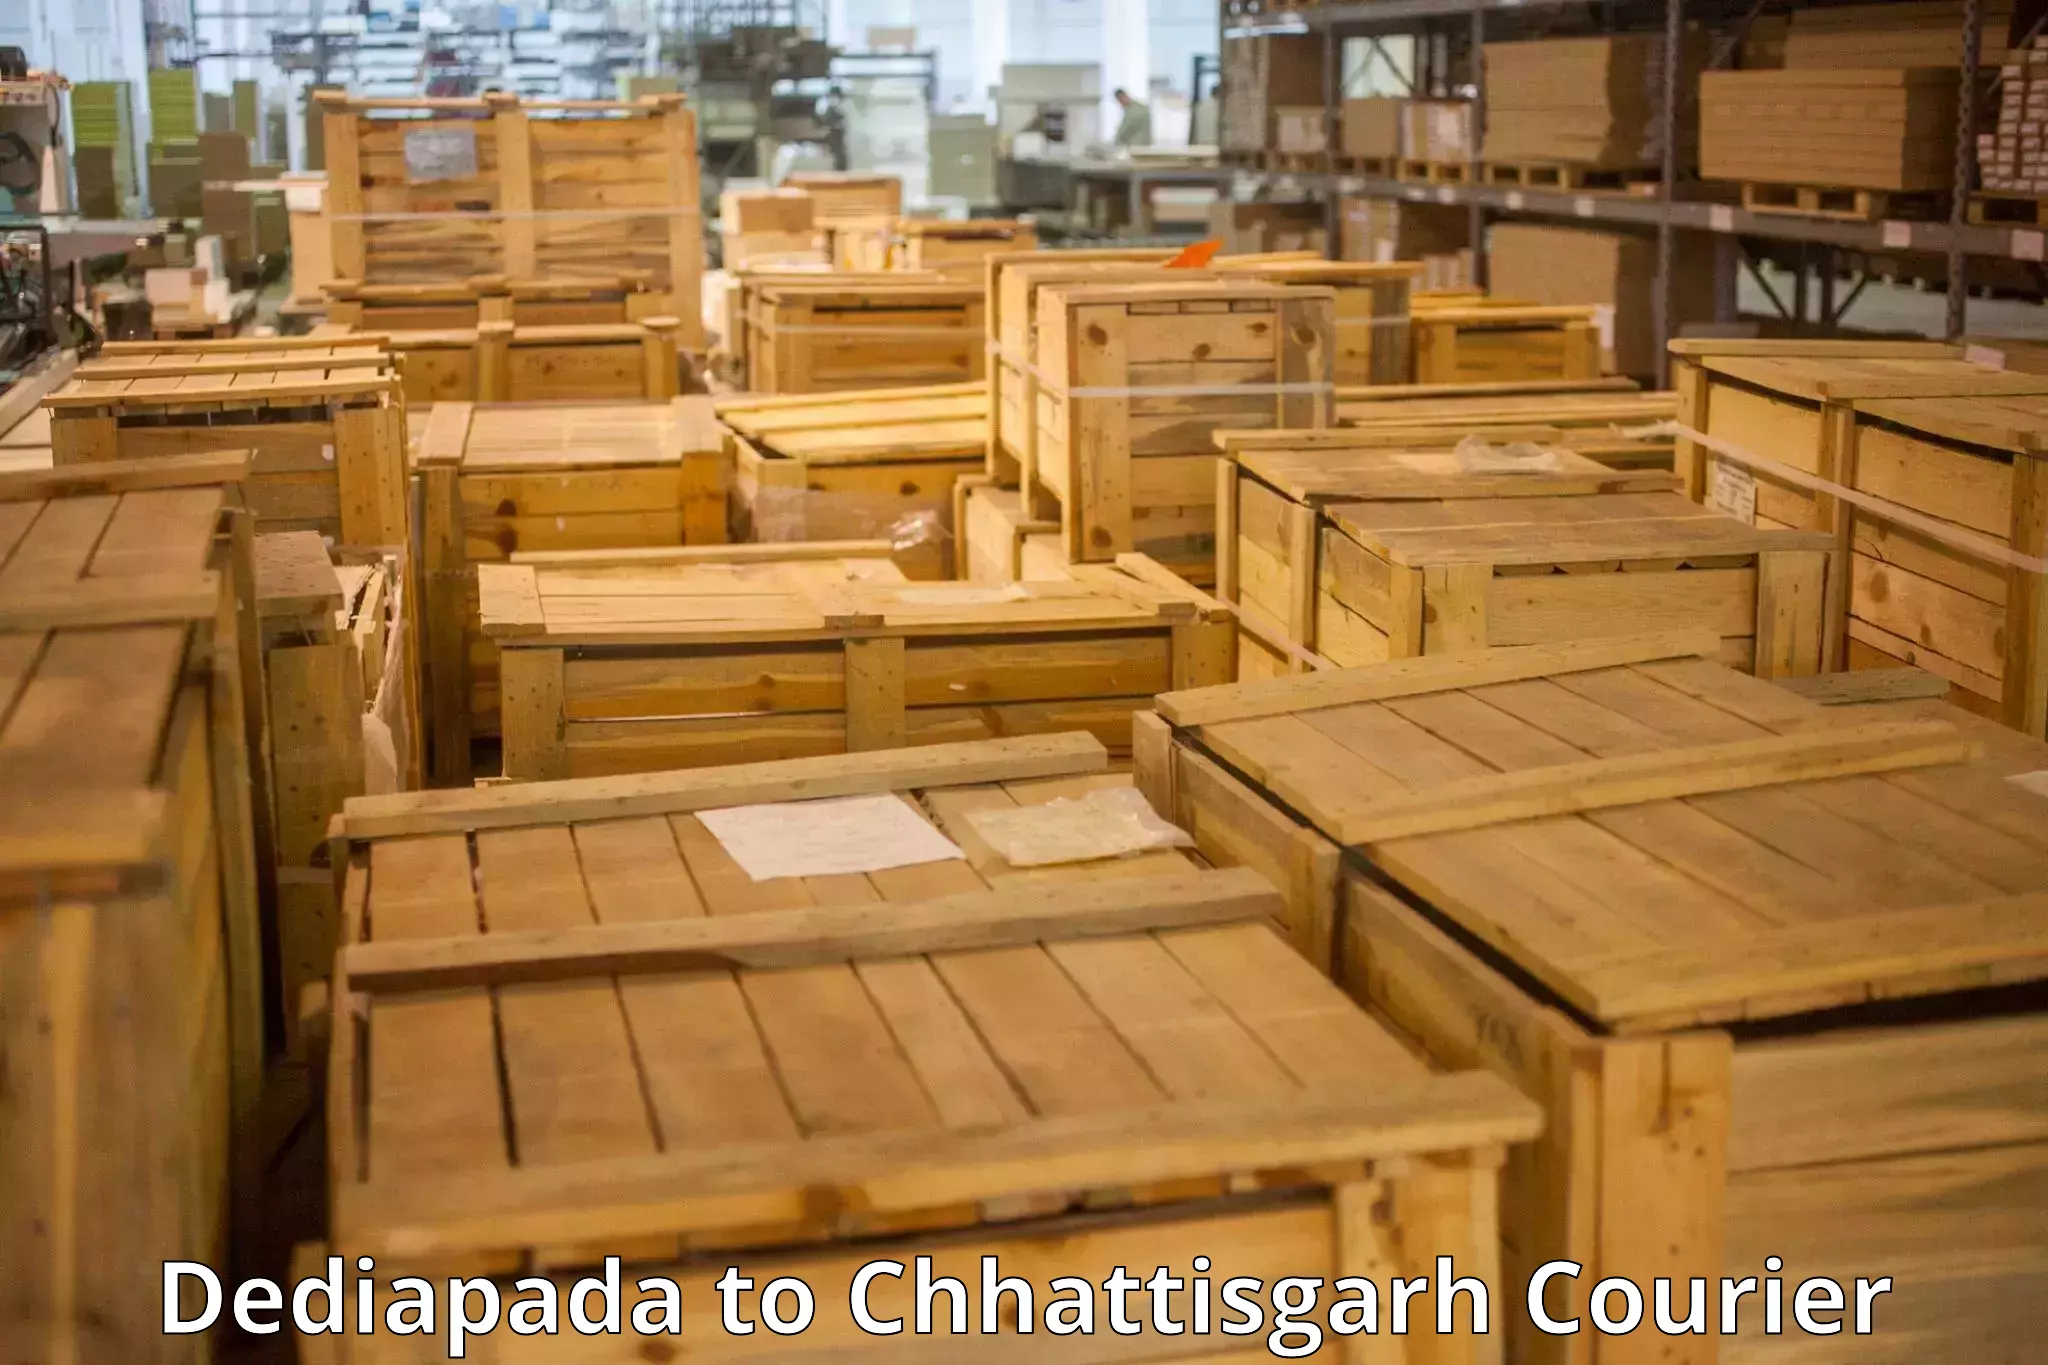 Baggage shipping experts Dediapada to Patna Chhattisgarh